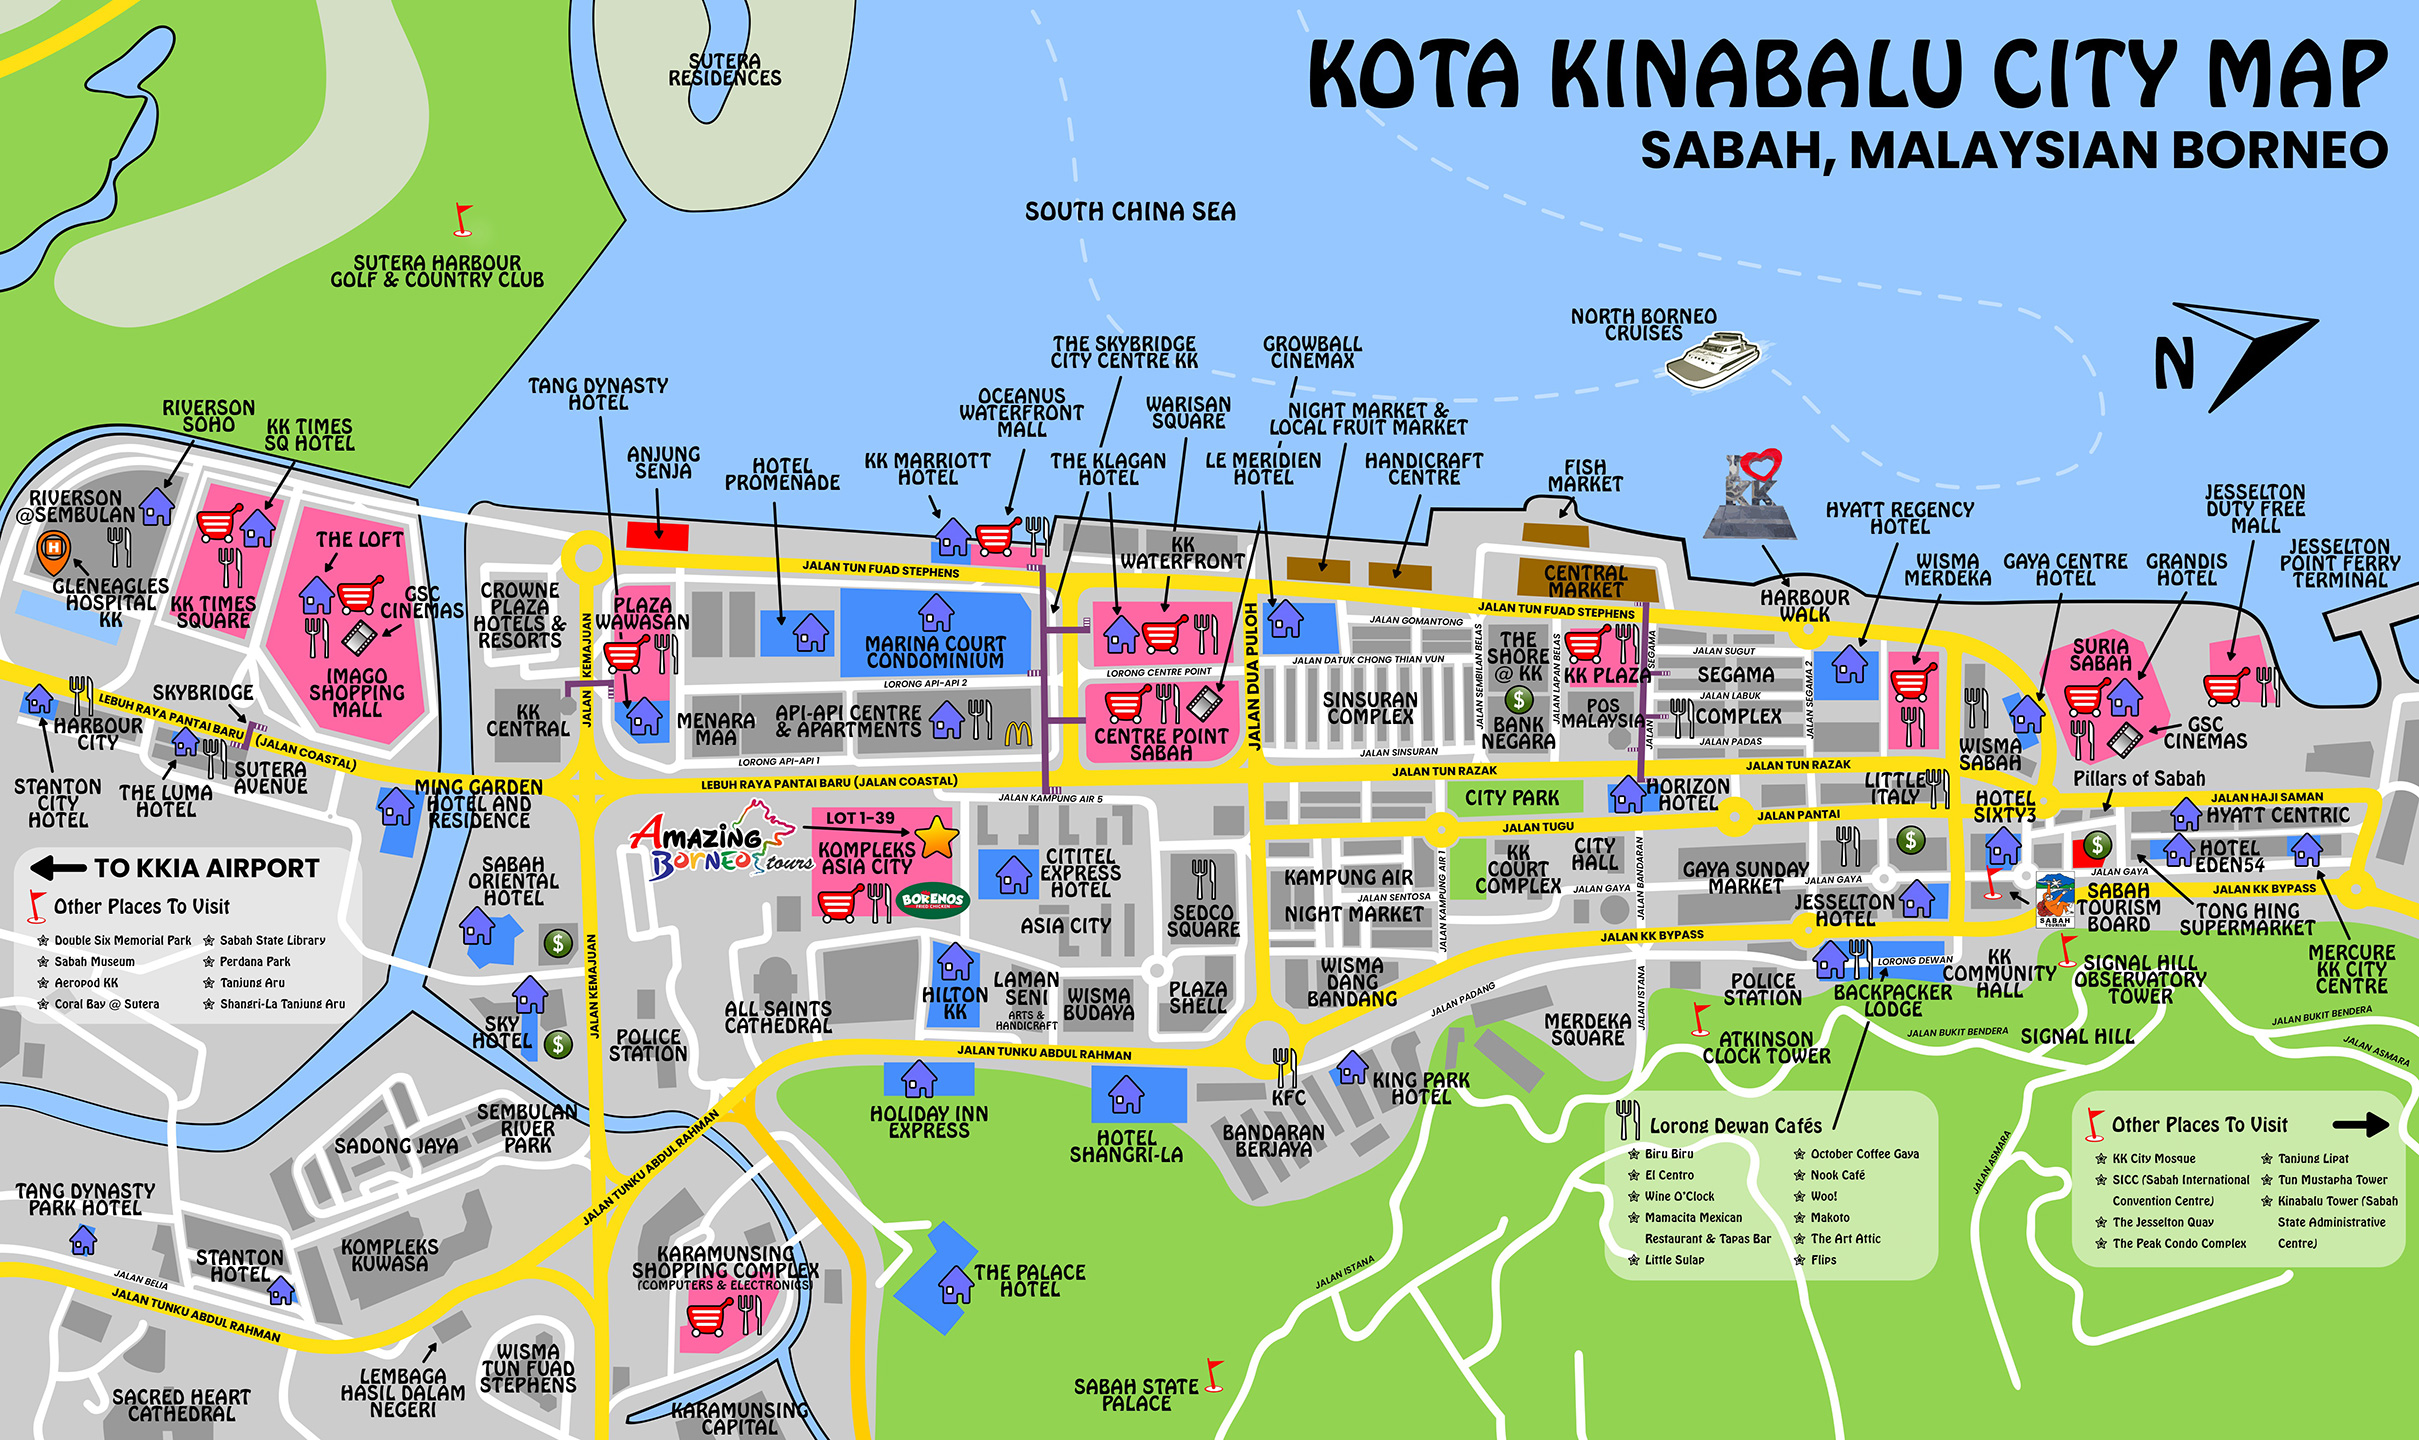 Kota Kinabalu City Map - Sabah Malaysian Borneo